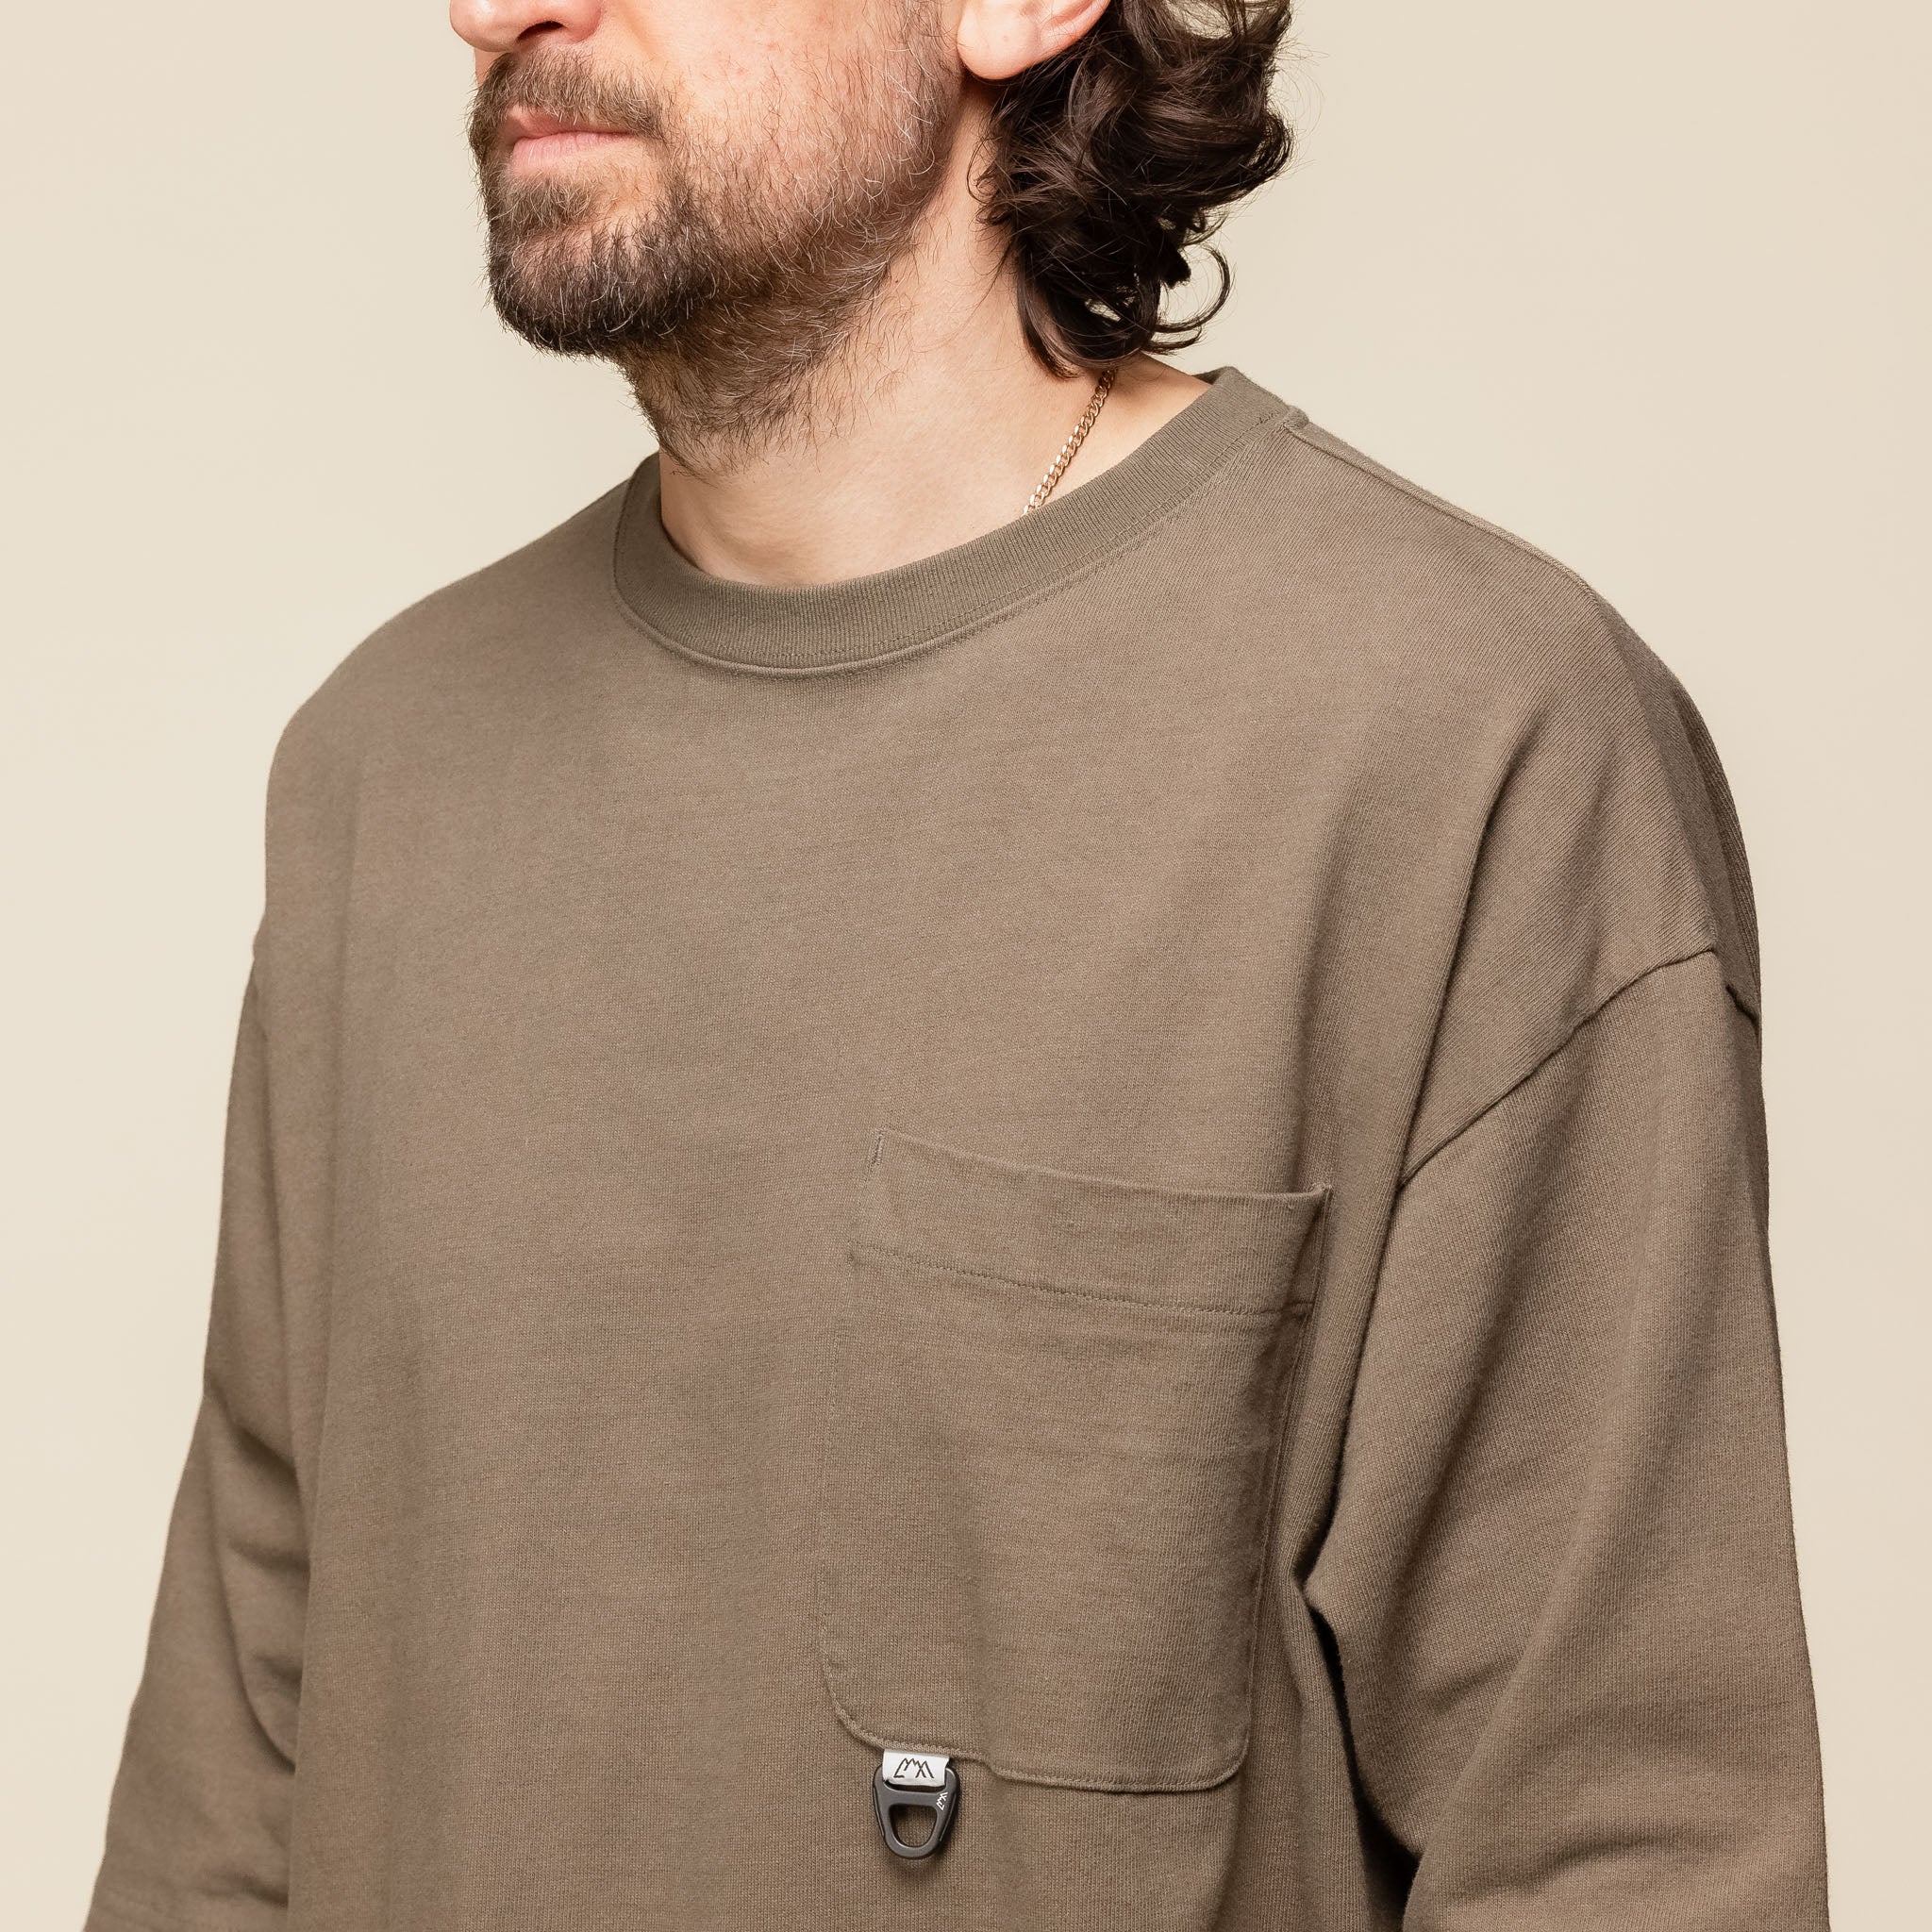 CMF Comfy Outdoor Garment - Heavy Cotton T-Shirt - Dark Greige